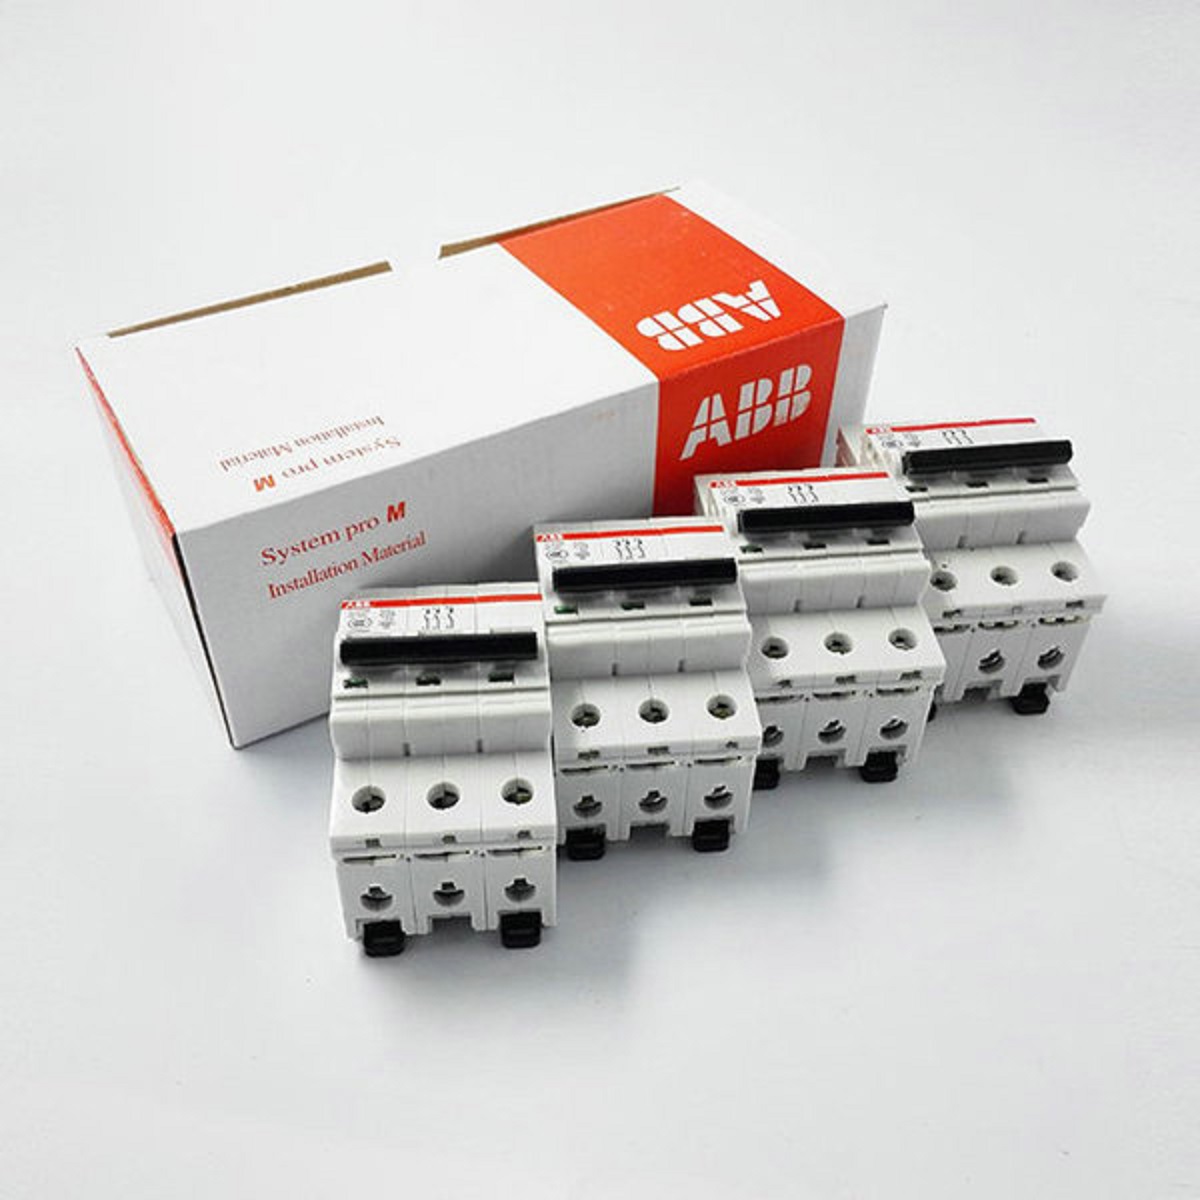 ABB微型断路器SH201-B13 10103906
SH201-B16 10103907 ABB,SH200,微型断路器,空气开关,abb断路器